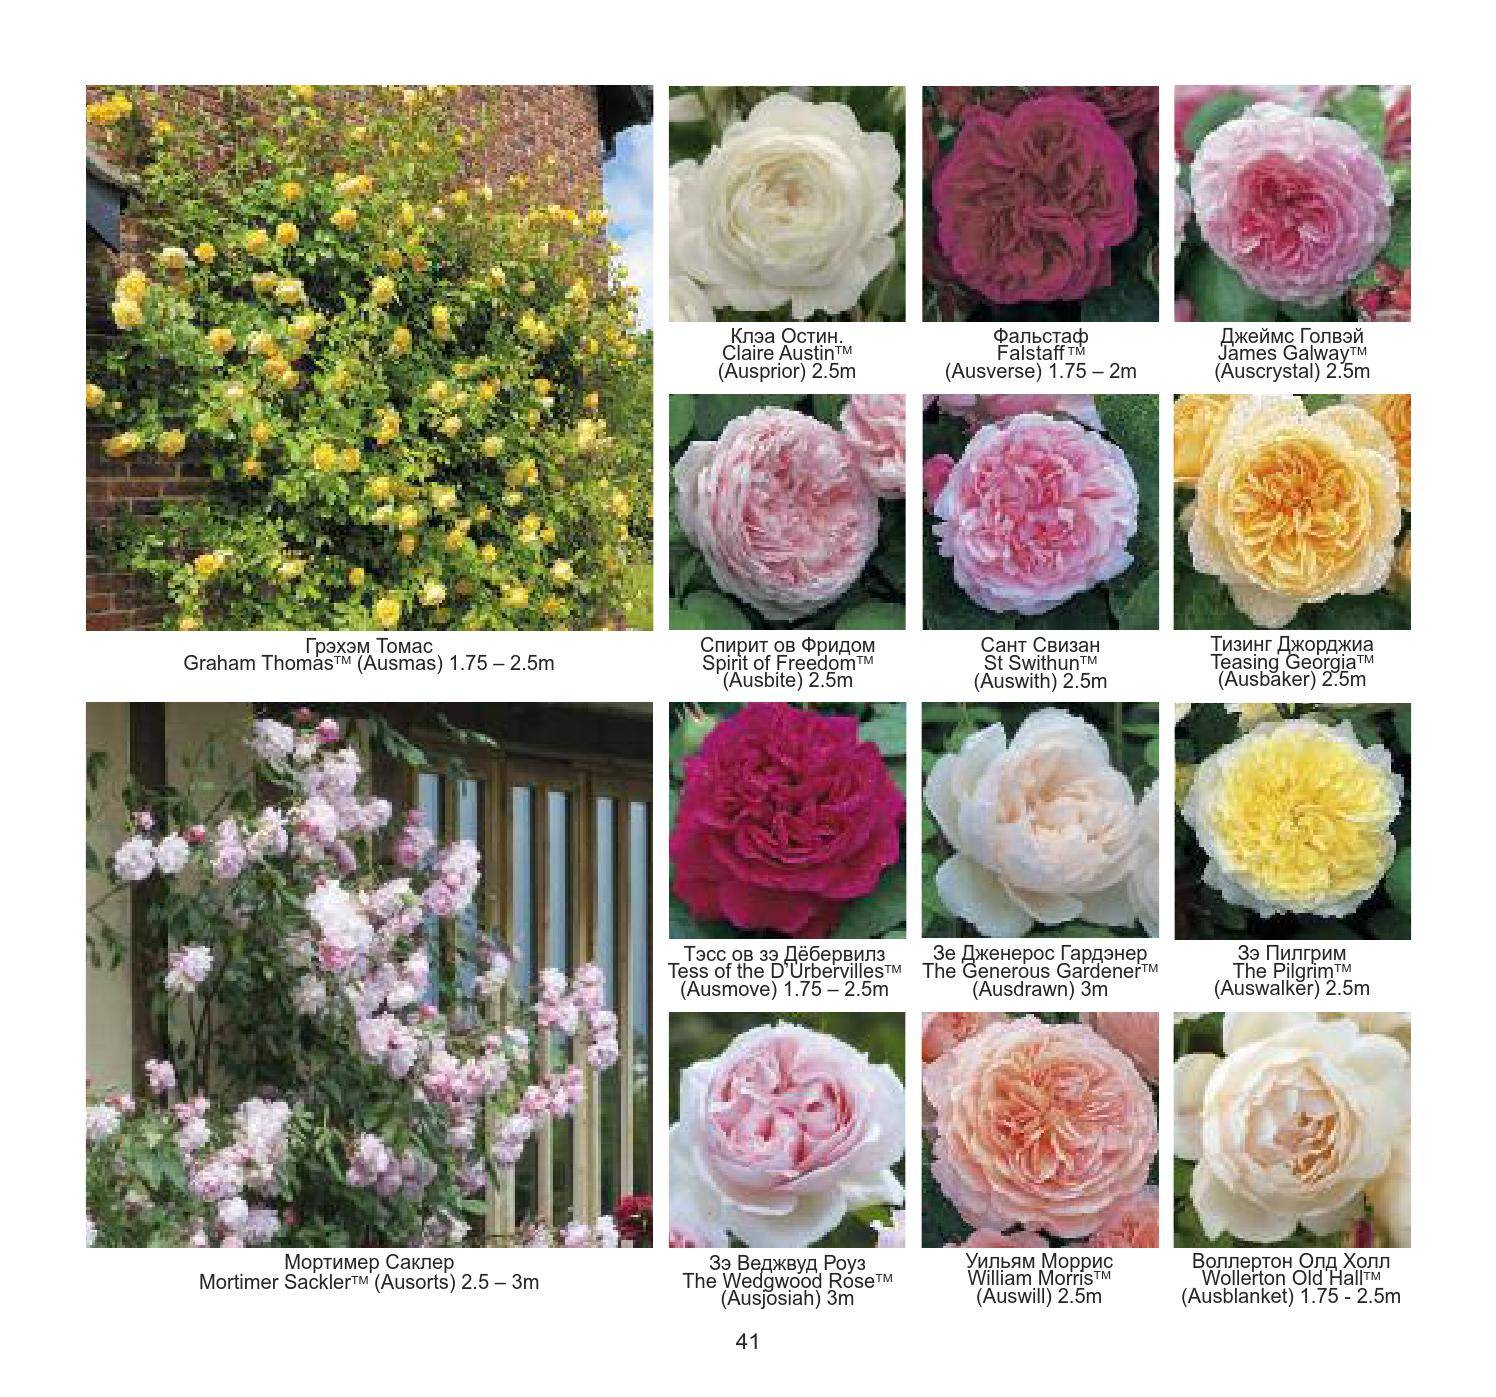 Сорта роз пионовидных фото и названиями